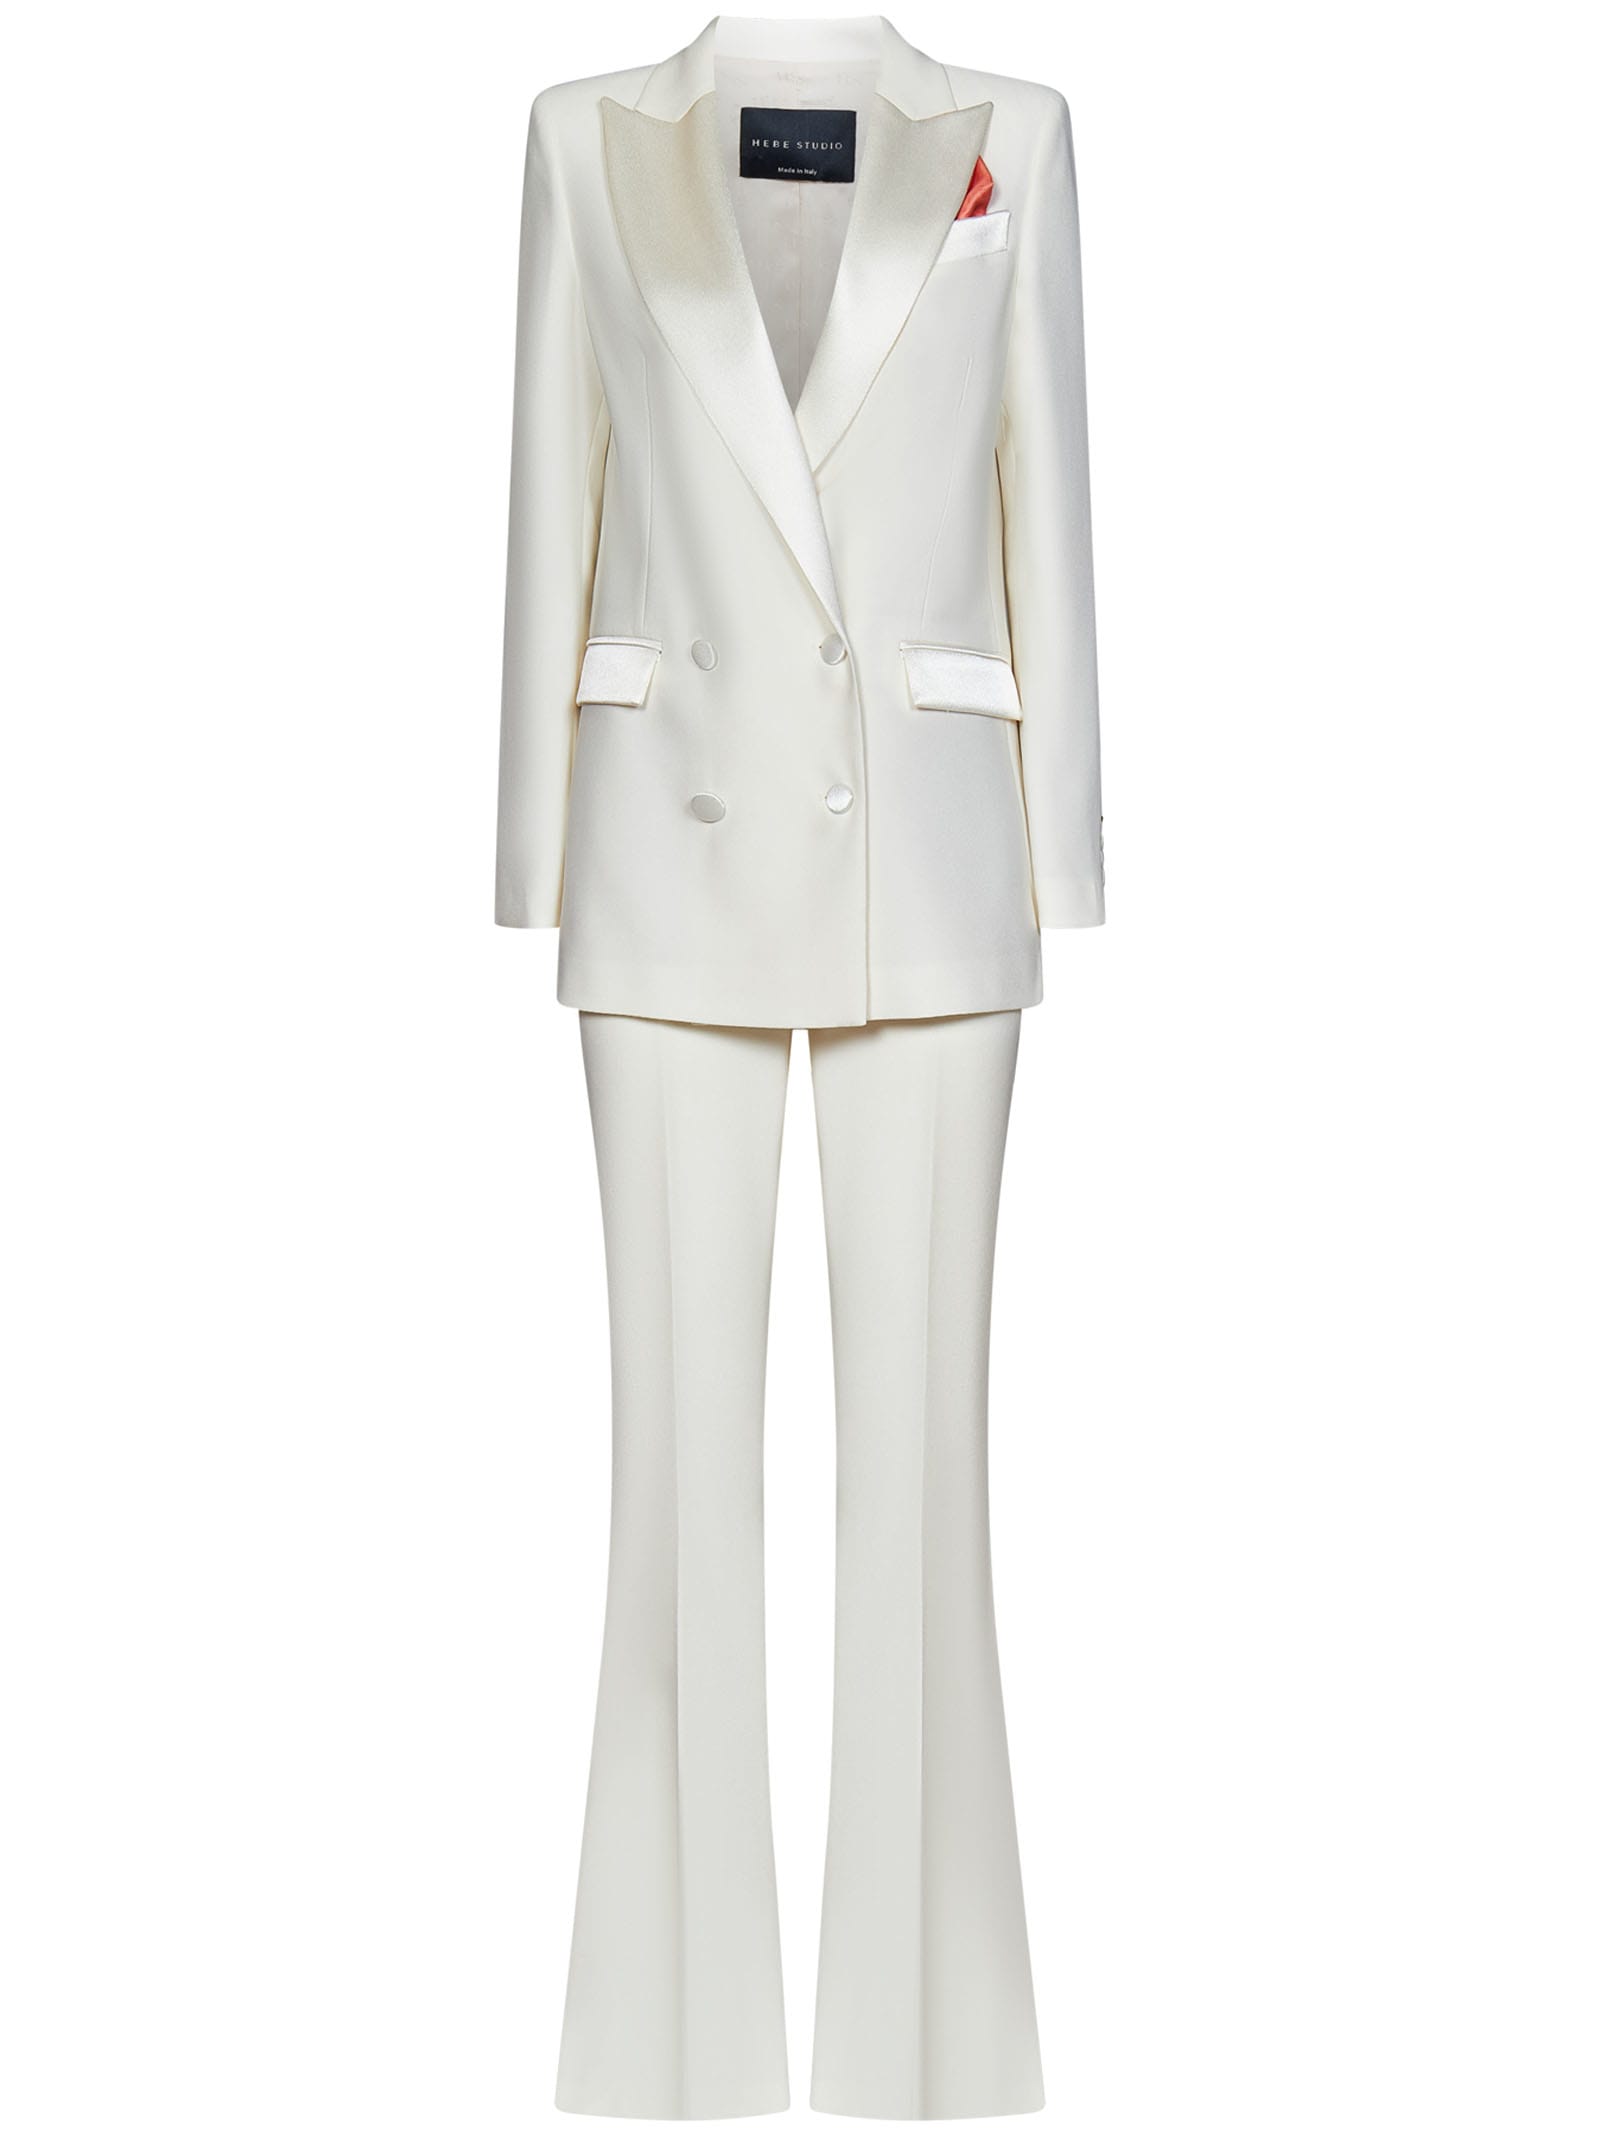 Hebe Studio The Bianca Suit Suit